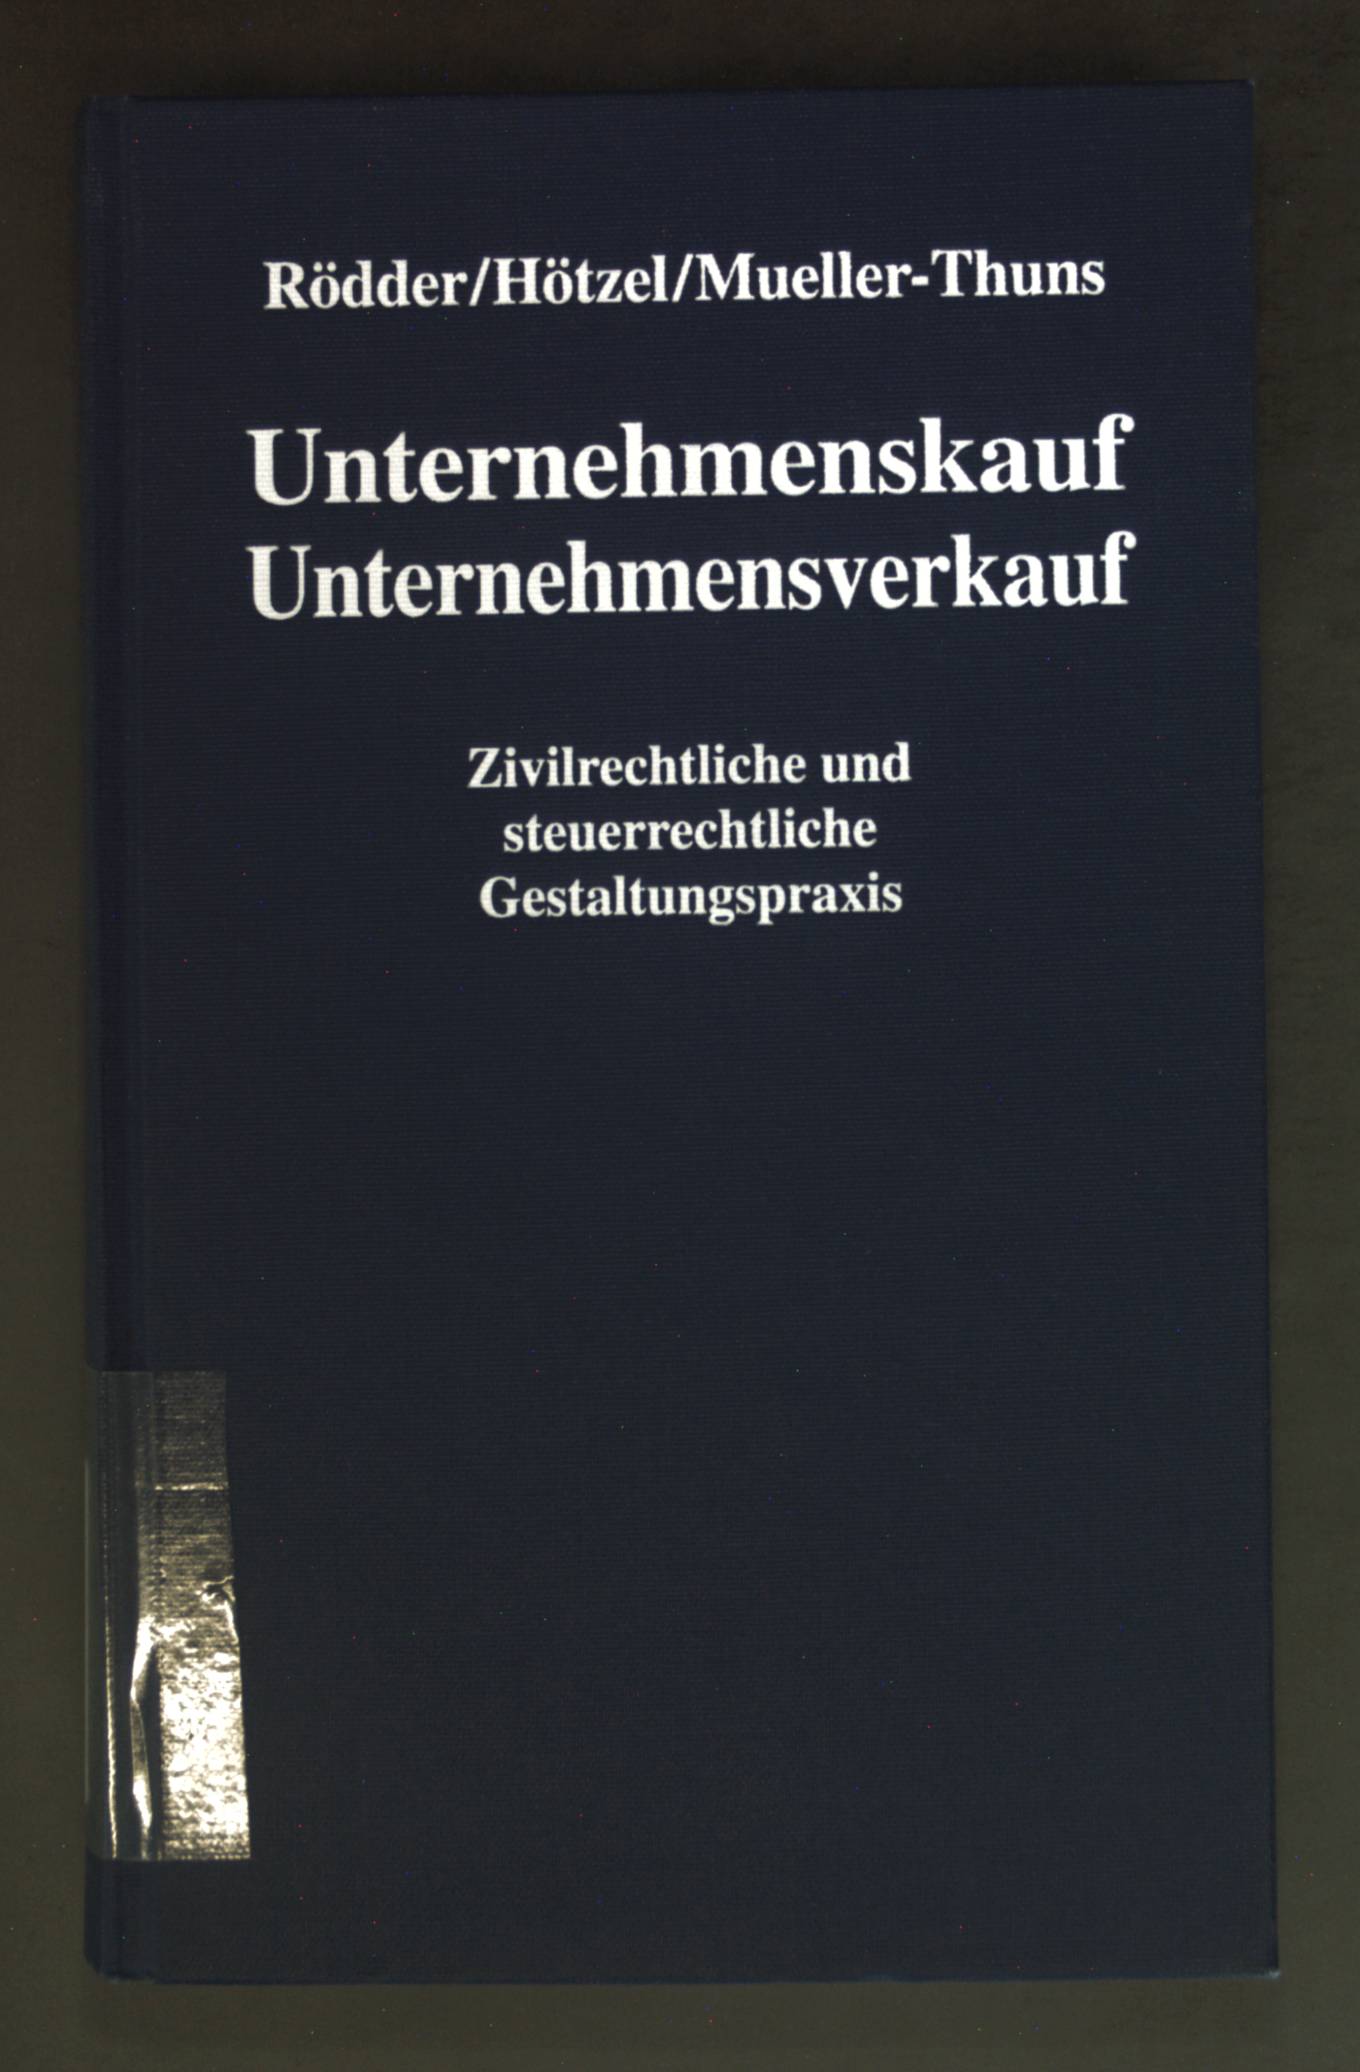 Unternehmenskauf, Unternehmensverkauf : zivil- und steuerrechtliche Gestaltungspraxis. - Rödder, Thomas, Oliver Hötzel und Thomas Mueller-Thuns